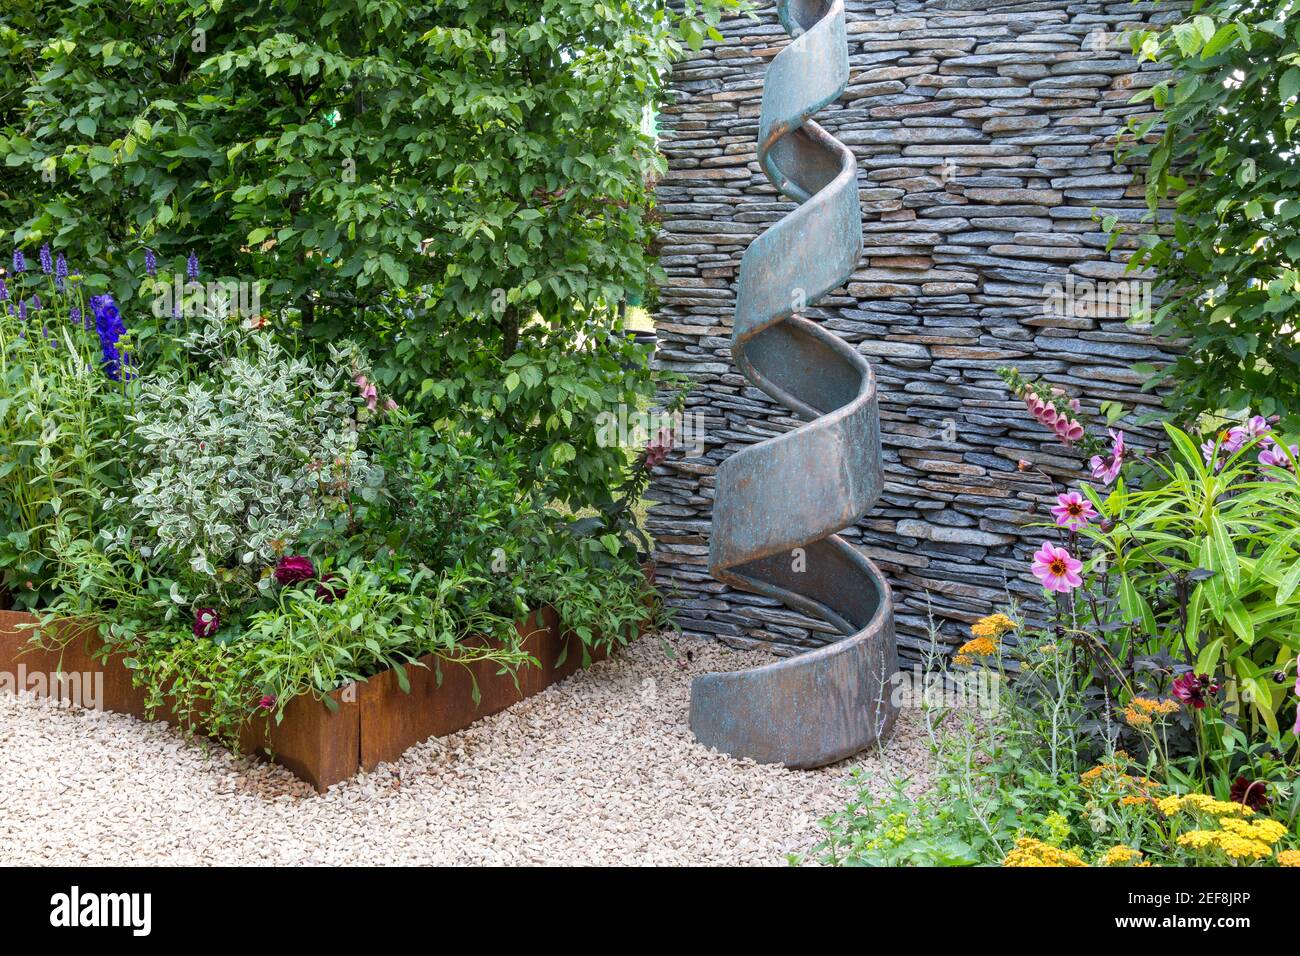 Petite cour anglaise jardin de cottage avec sculpture en spirale - mur de pierre sèche - haie - chemin de gravier avec jardin de fleurs bordent l'Angleterre Royaume-Uni Banque D'Images